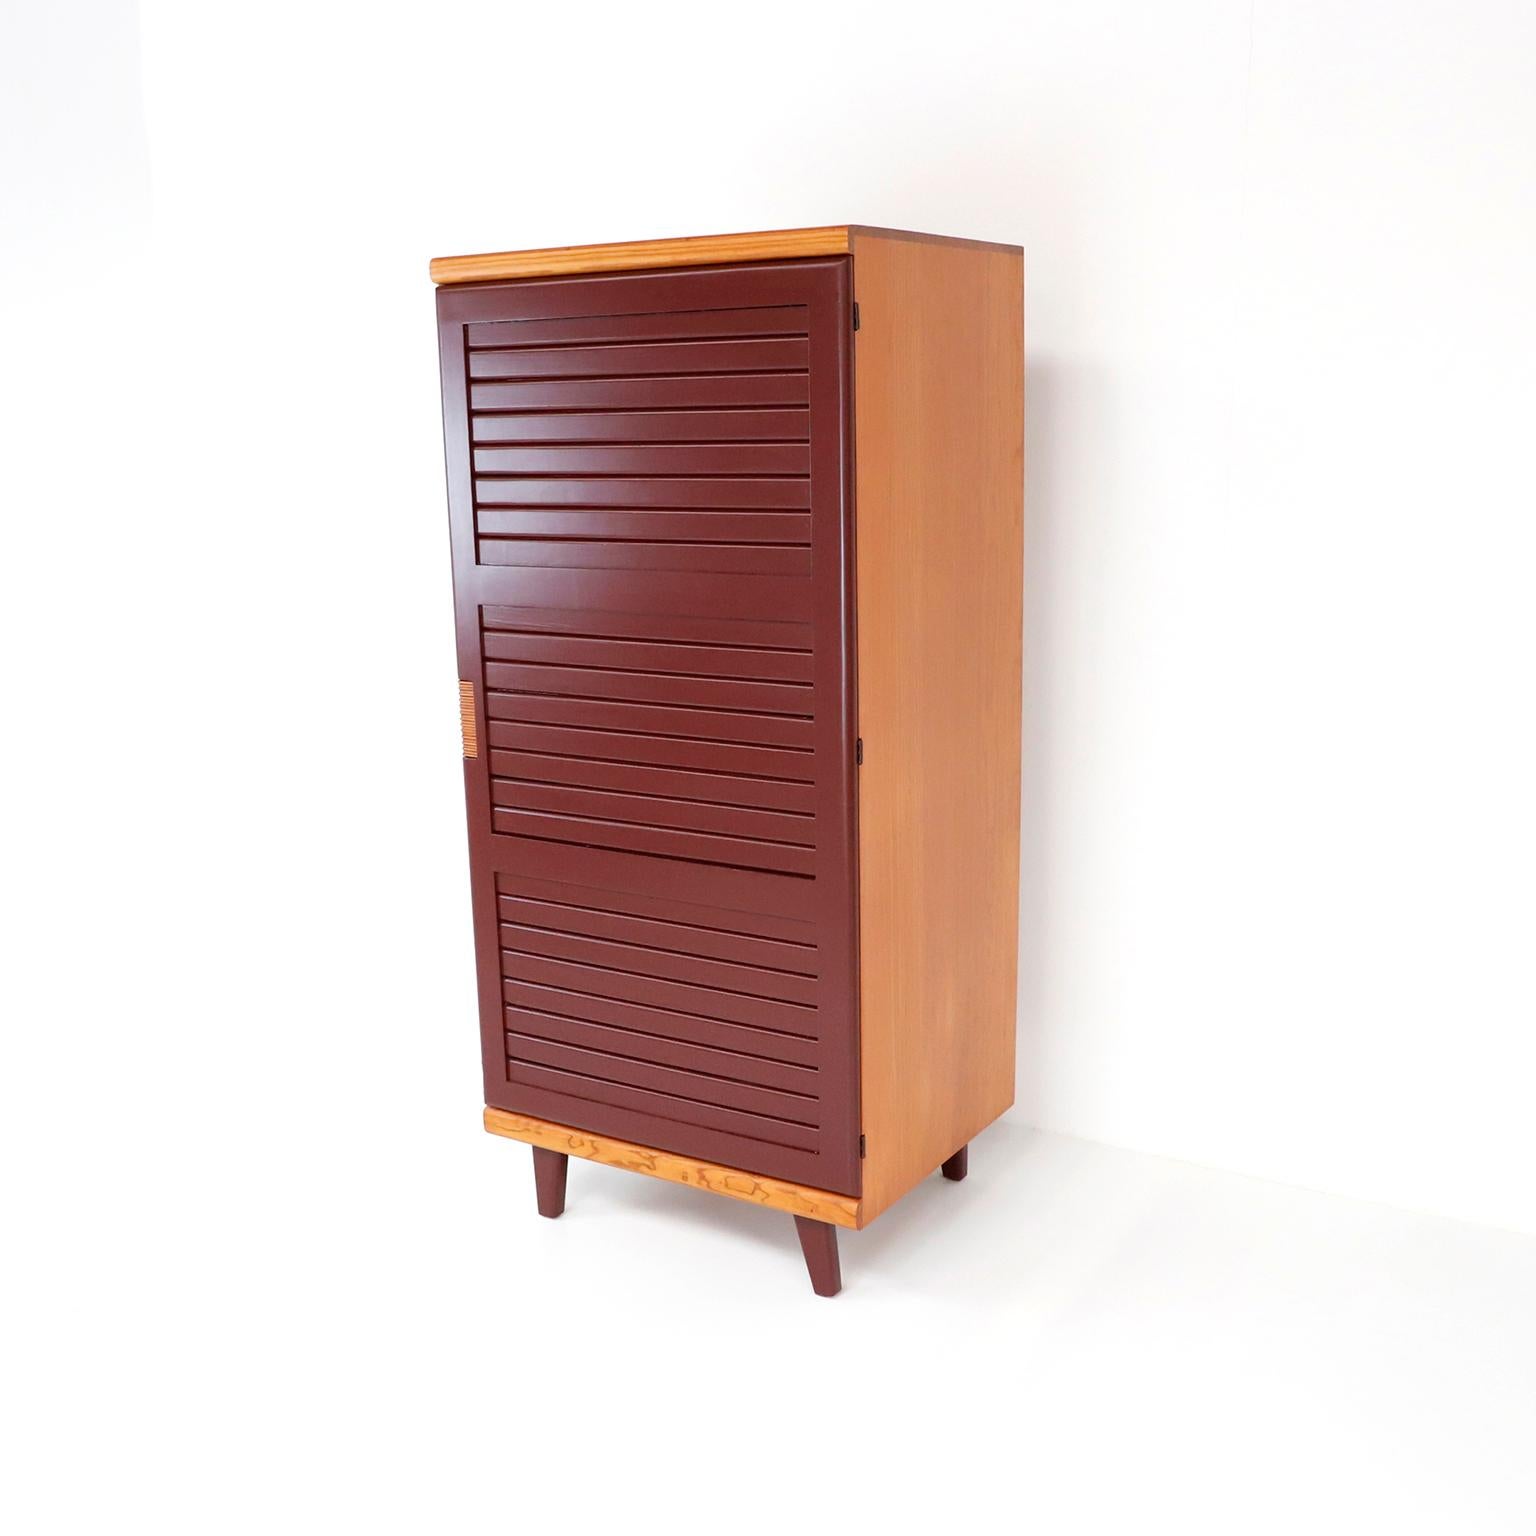 Nous vous proposons cette rare et originale armoire conçue par Michael Van Beuren pour la ligne 